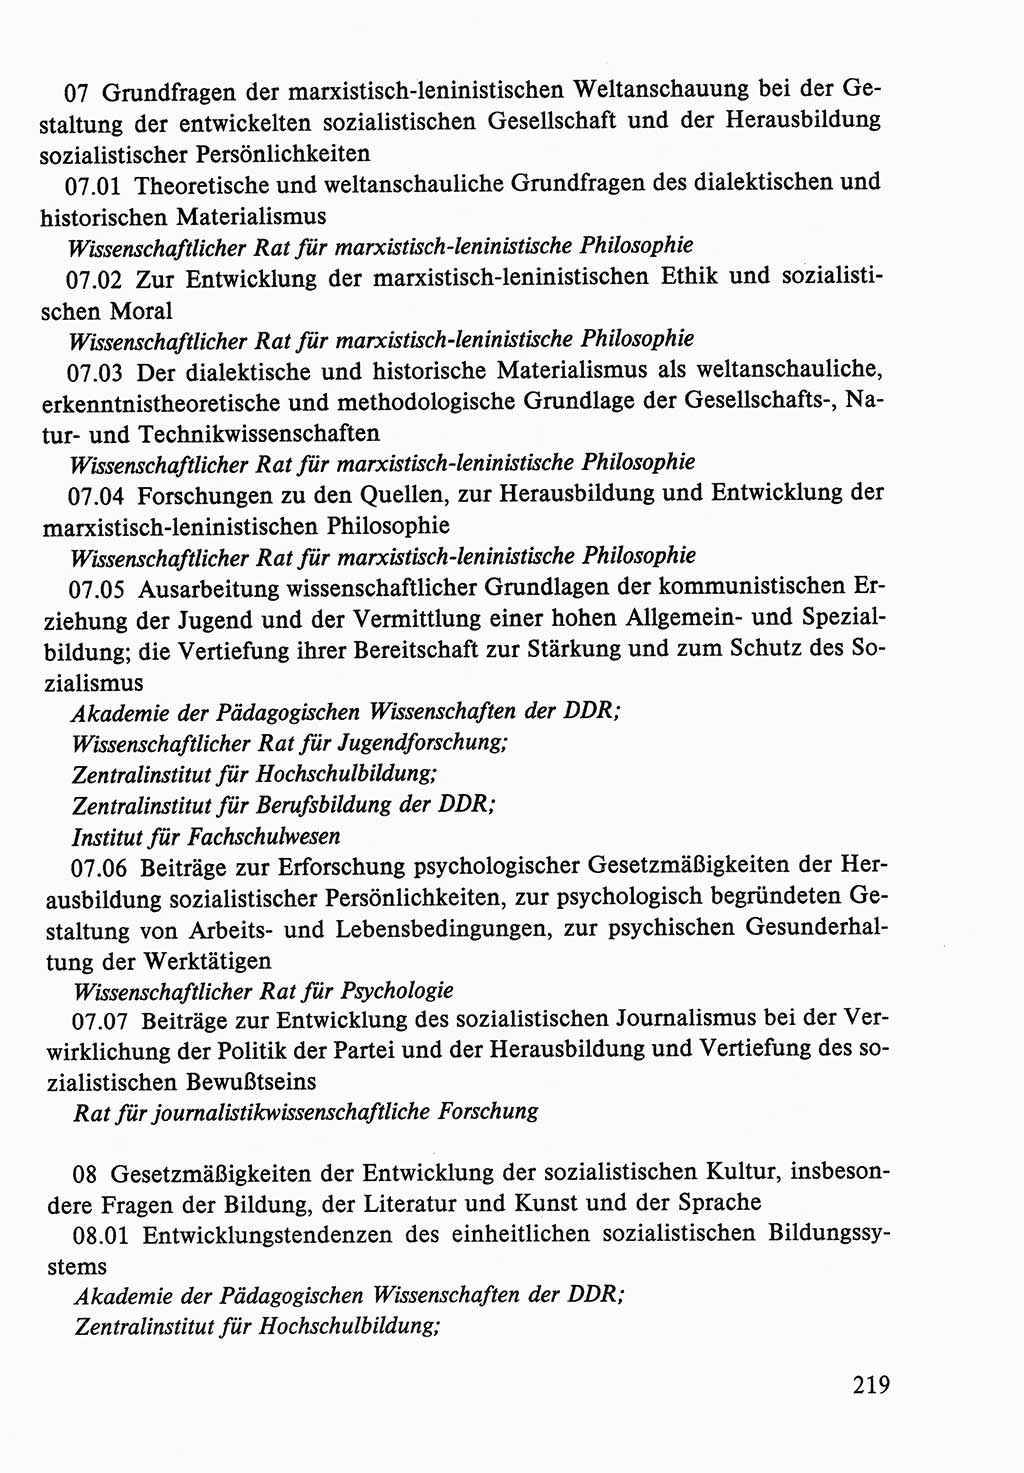 Dokumente der Sozialistischen Einheitspartei Deutschlands (SED) [Deutsche Demokratische Republik (DDR)] 1986-1987, Seite 219 (Dok. SED DDR 1986-1987, S. 219)